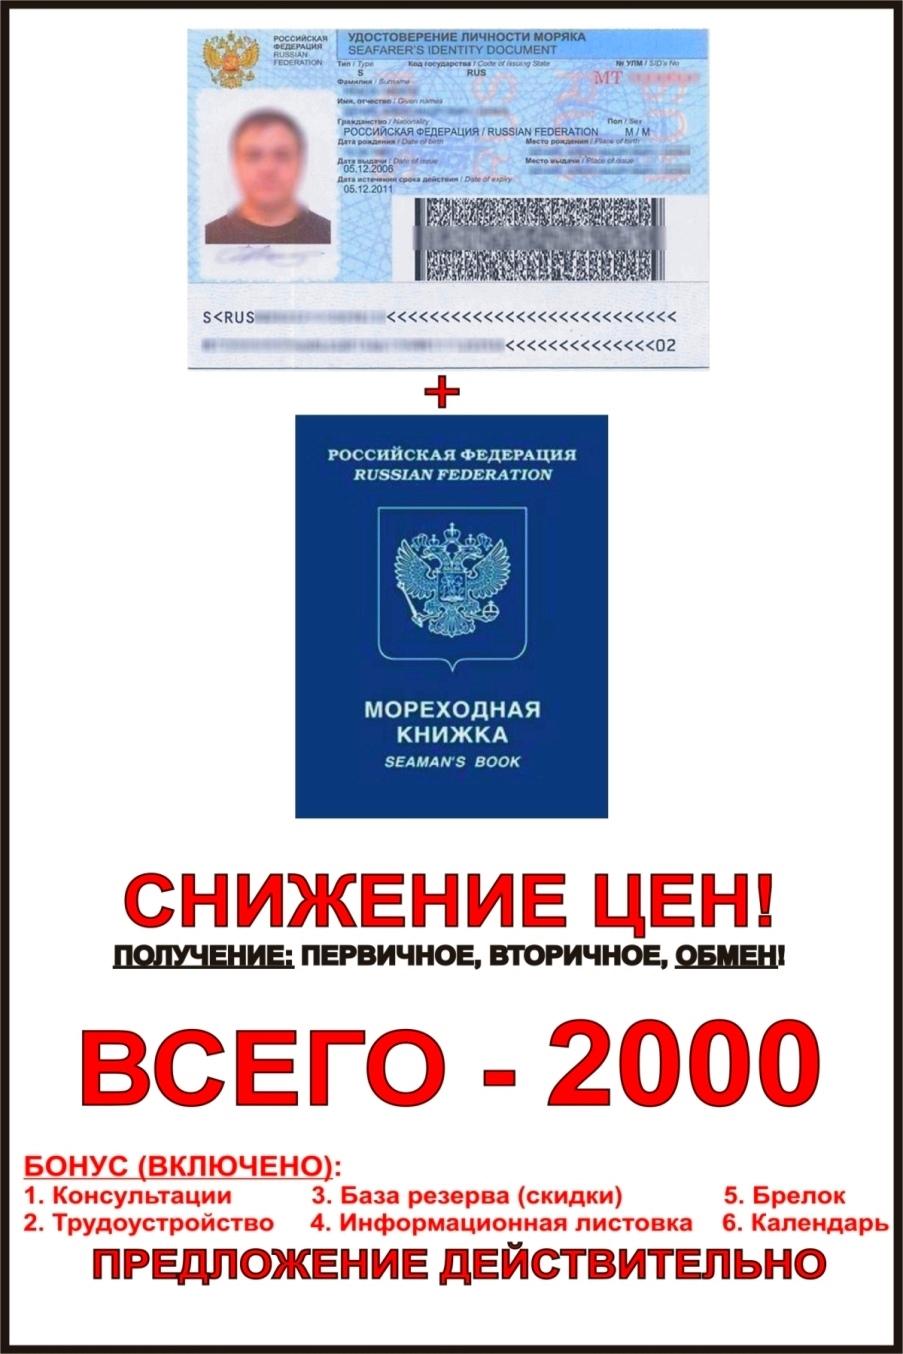 Получение паспорта моряка: процедура, документы